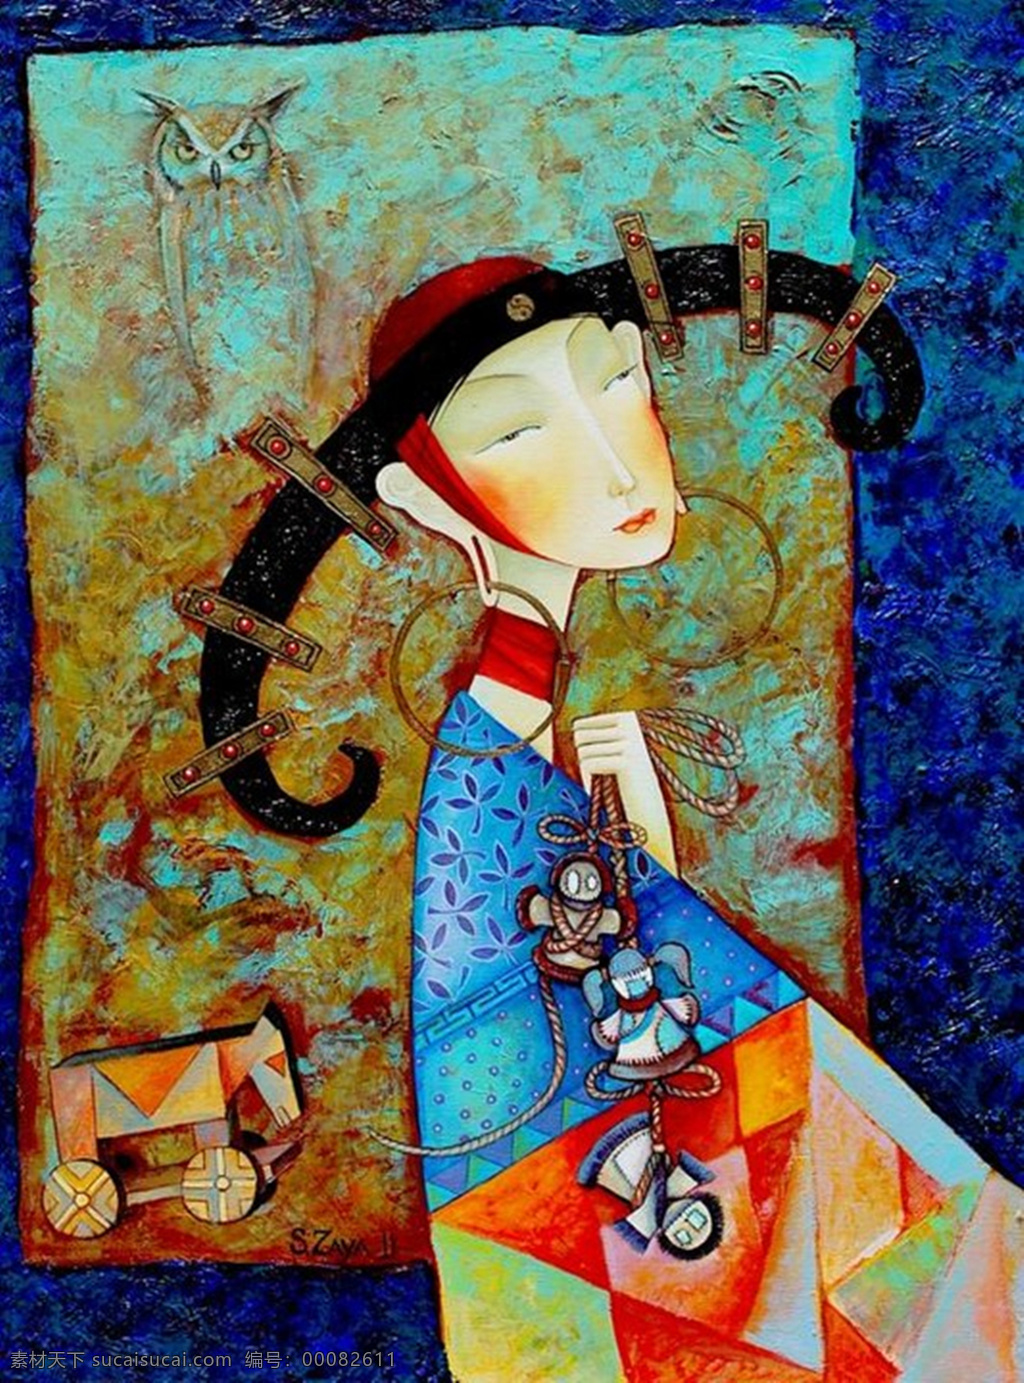 插画 抽象 绘画书法 蒙古族 人物 图案 文化艺术 设计素材 模板下载 蒙古族插画 艺术 psd源文件